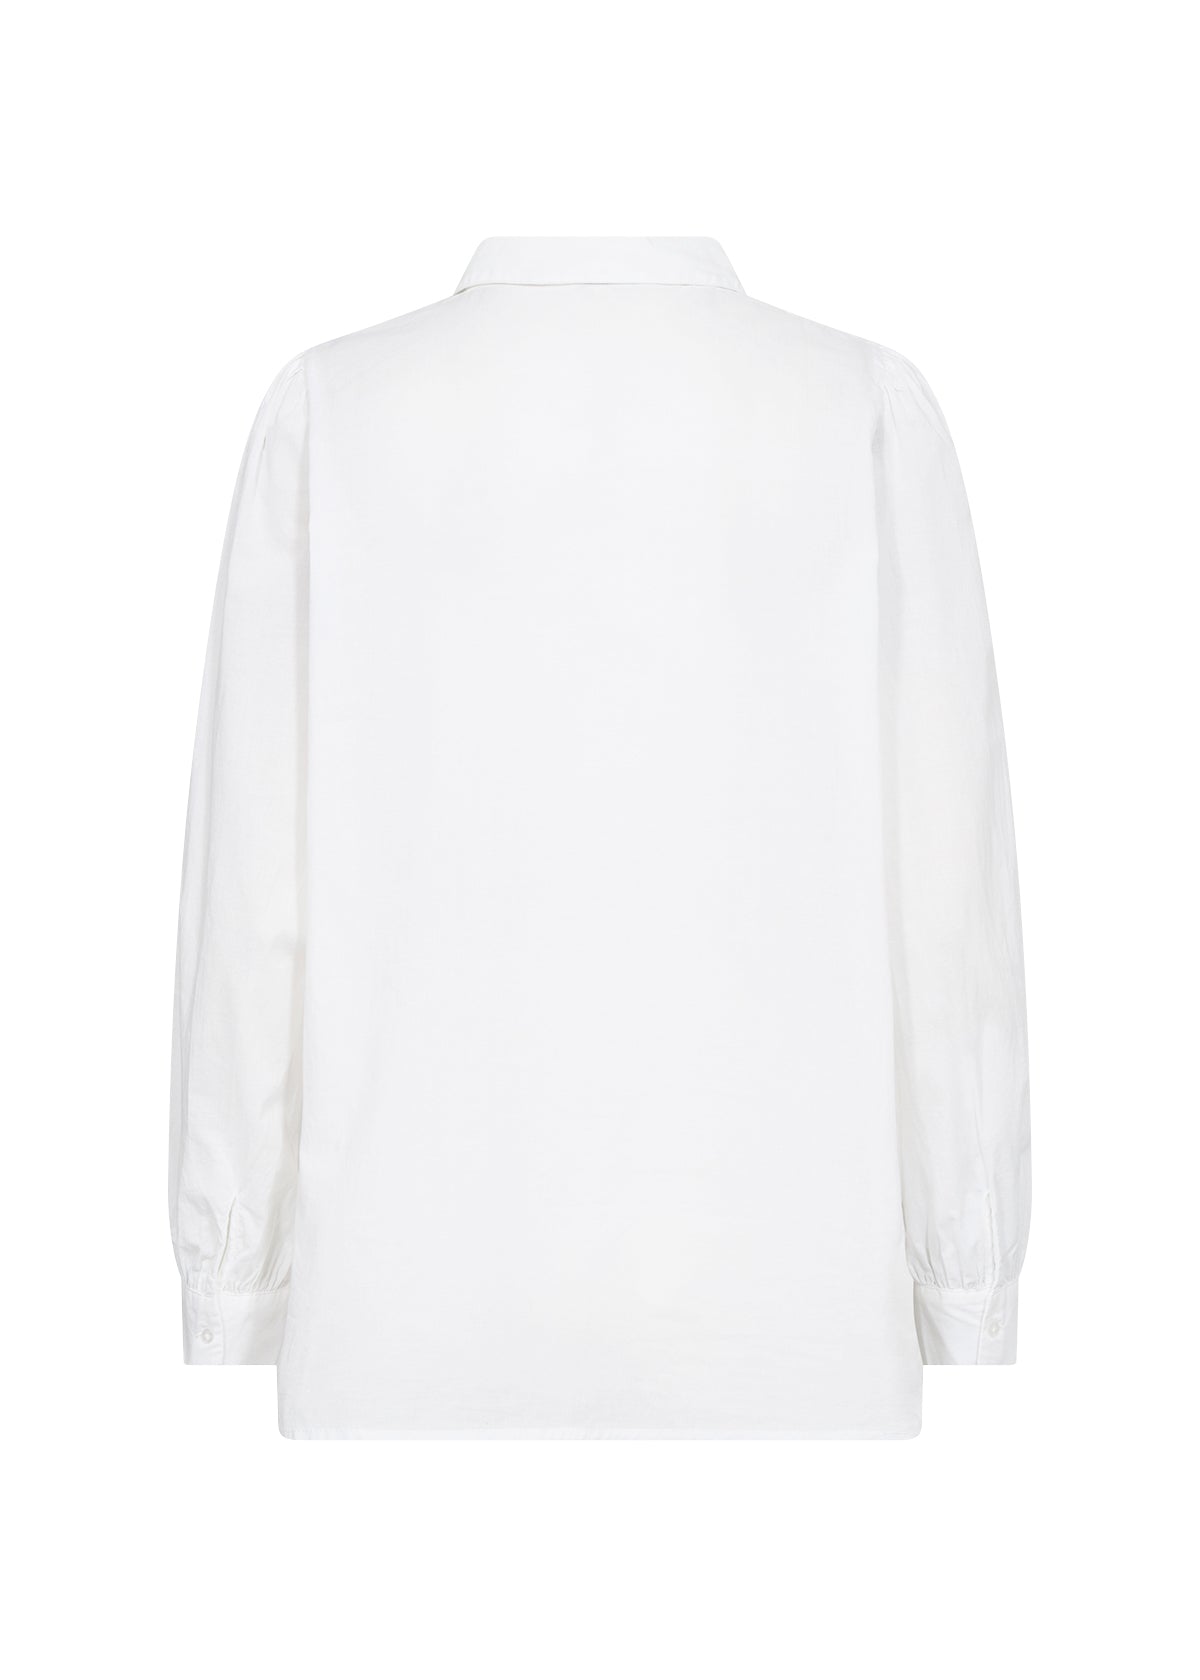 Soya Concept Caliste White Shirt